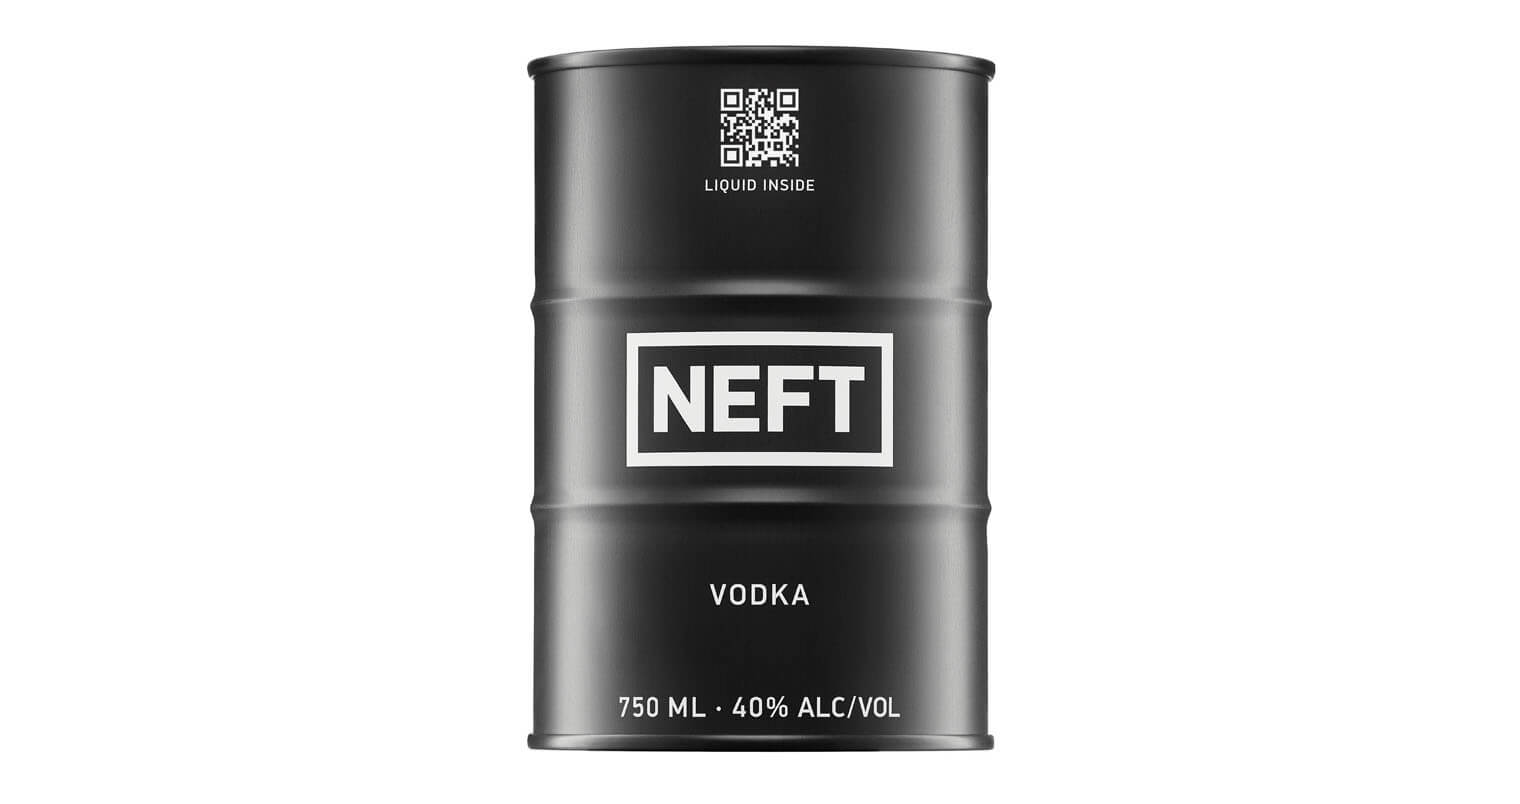 NEFT Vodka, black barrel, featured image